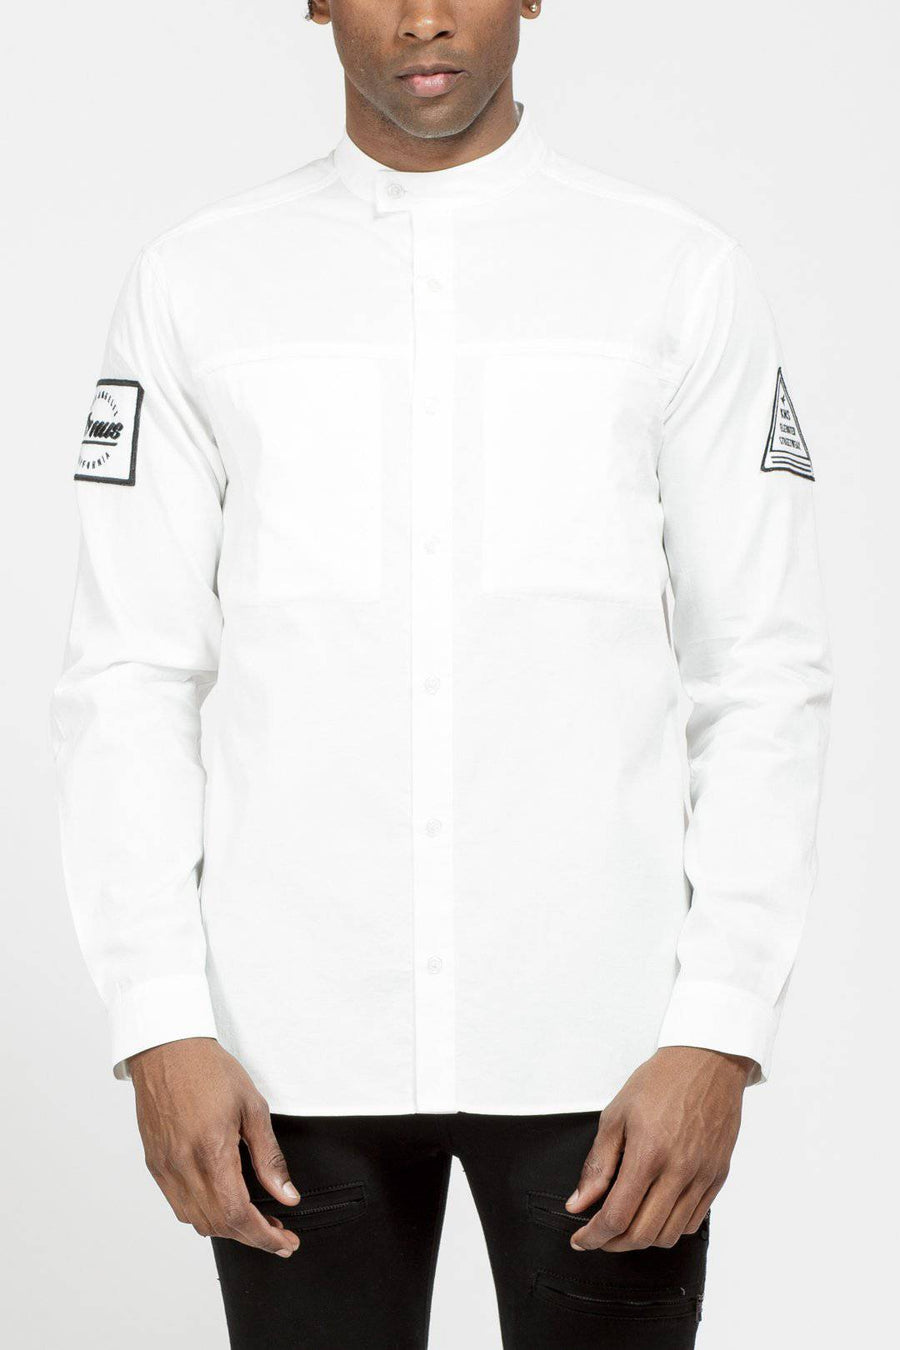 Konus Men's Long Sleeve Collar Shirt in White - shopatkonus